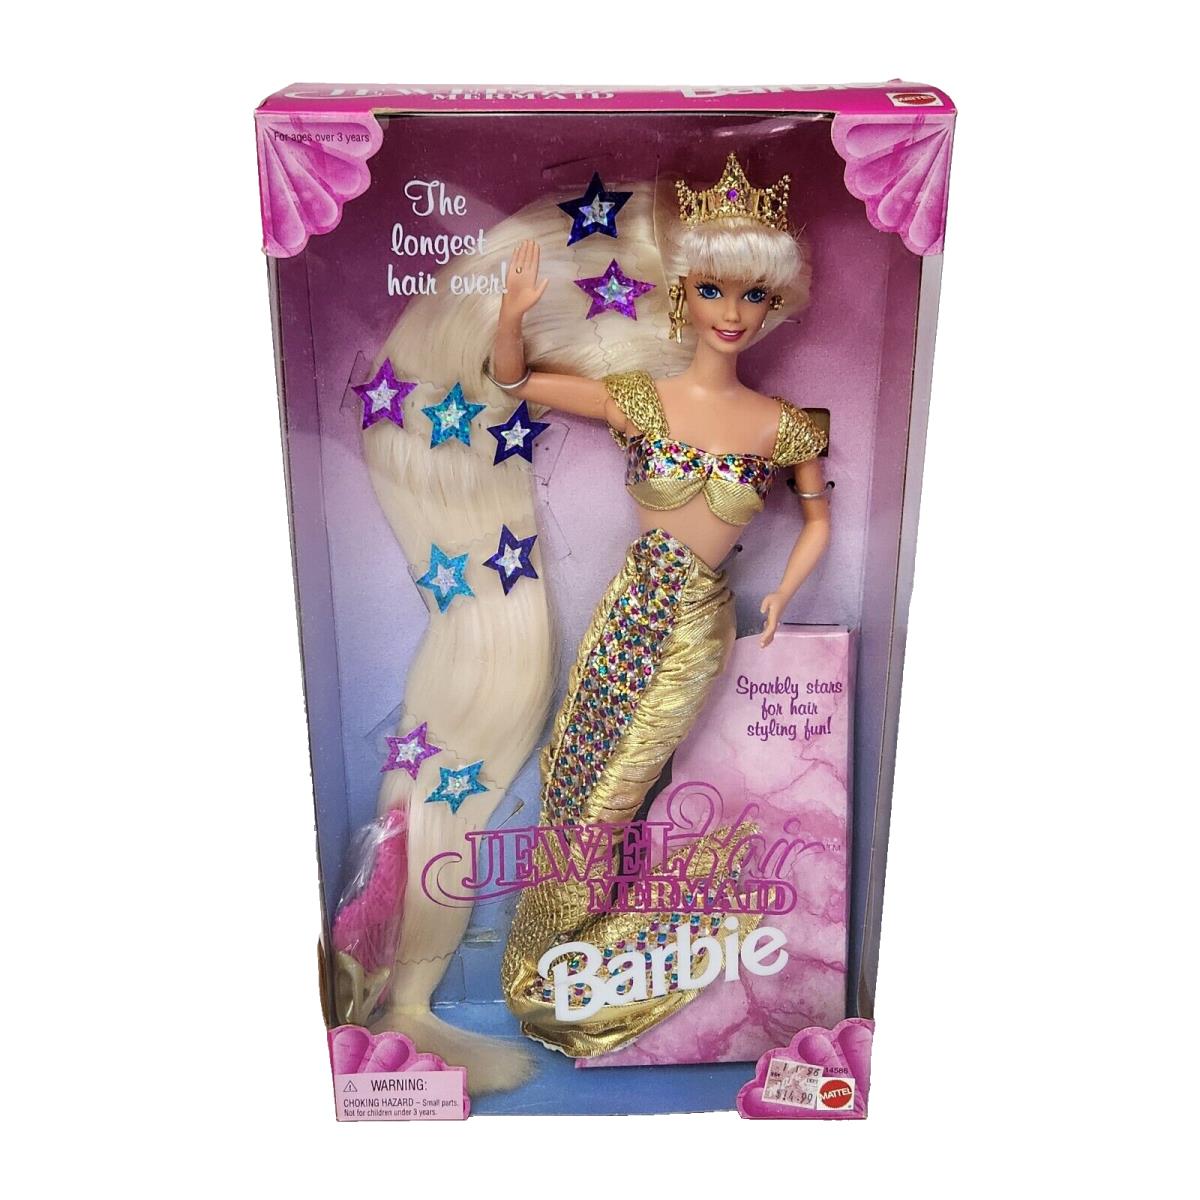 Vintage 1995 Jewel Hair Mermaid Barbie Doll Mattel 14586 IN Box